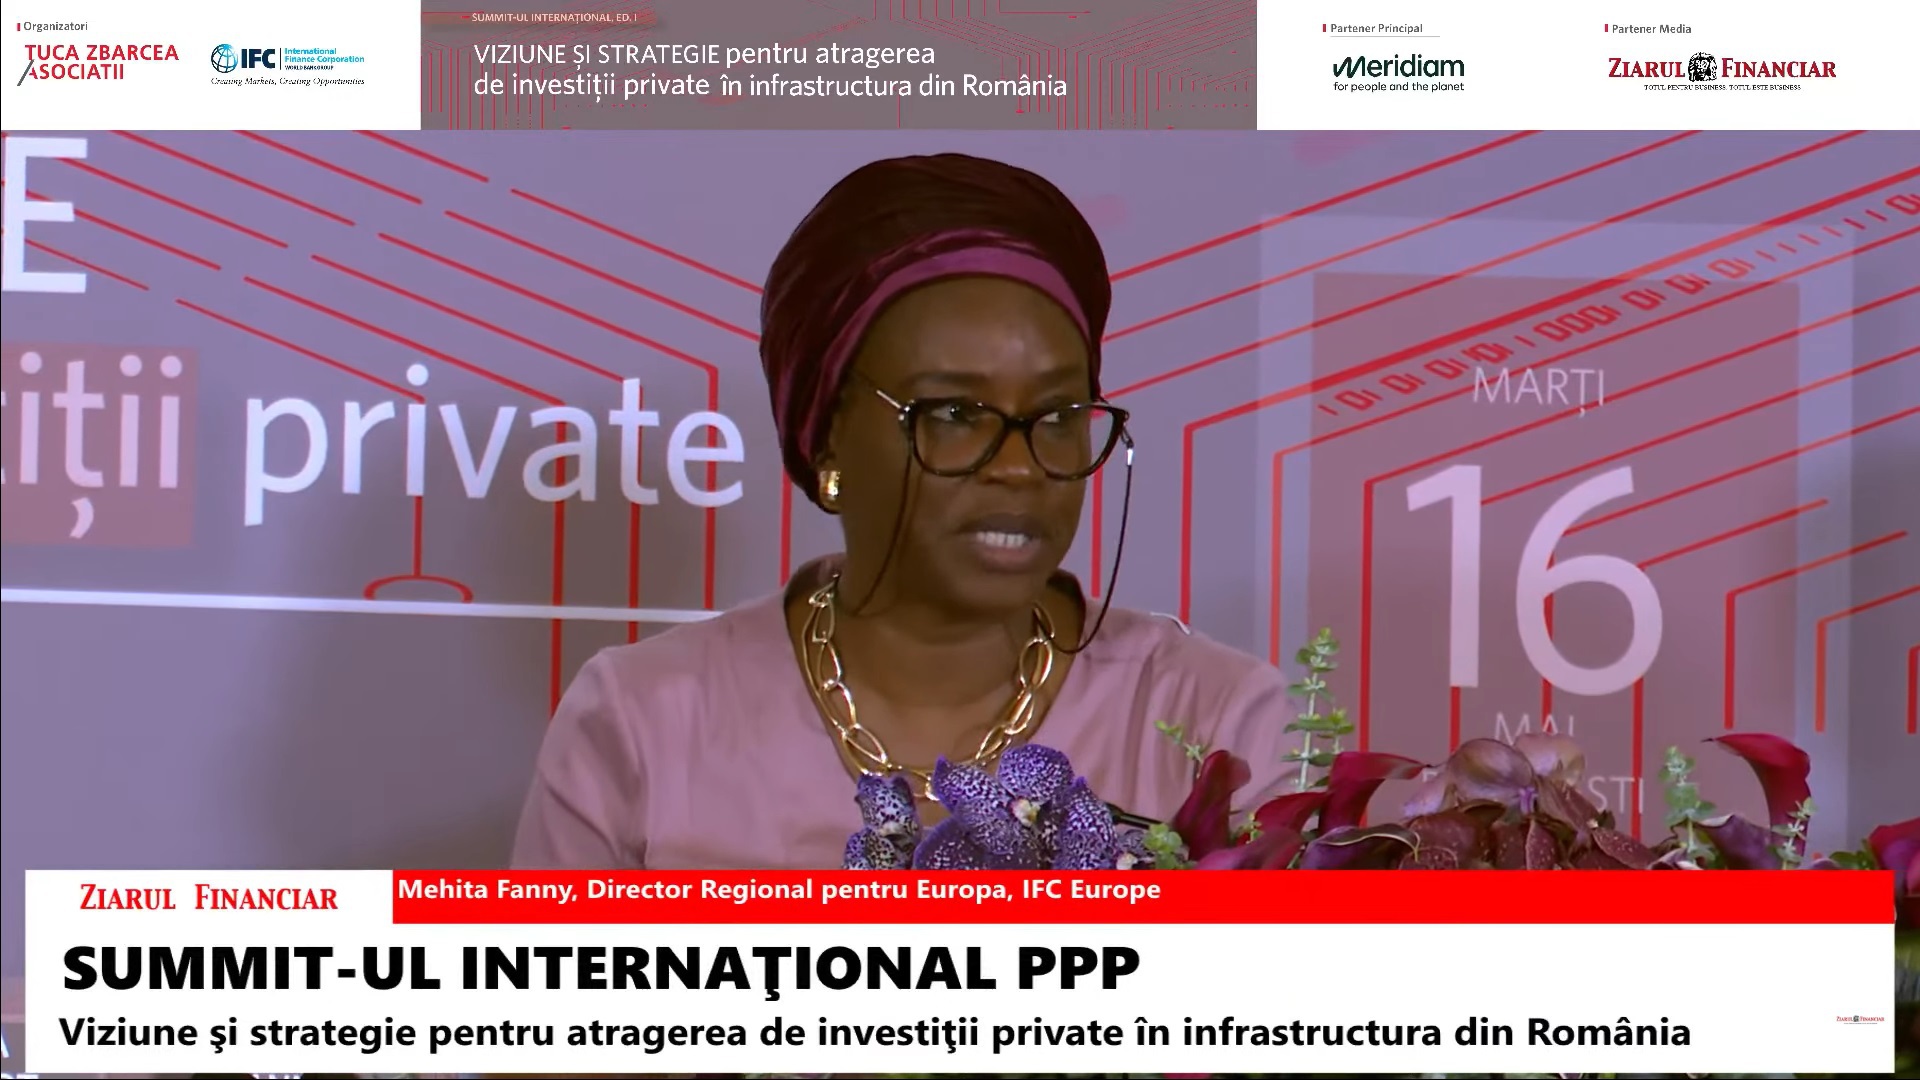 Mehita Fanny, IFC Europe: PPP rămâne un instrument pentru dezvoltarea infrastructurii şi este important să ne uităm spre el, chiar dacă am avut experienţe nefericite